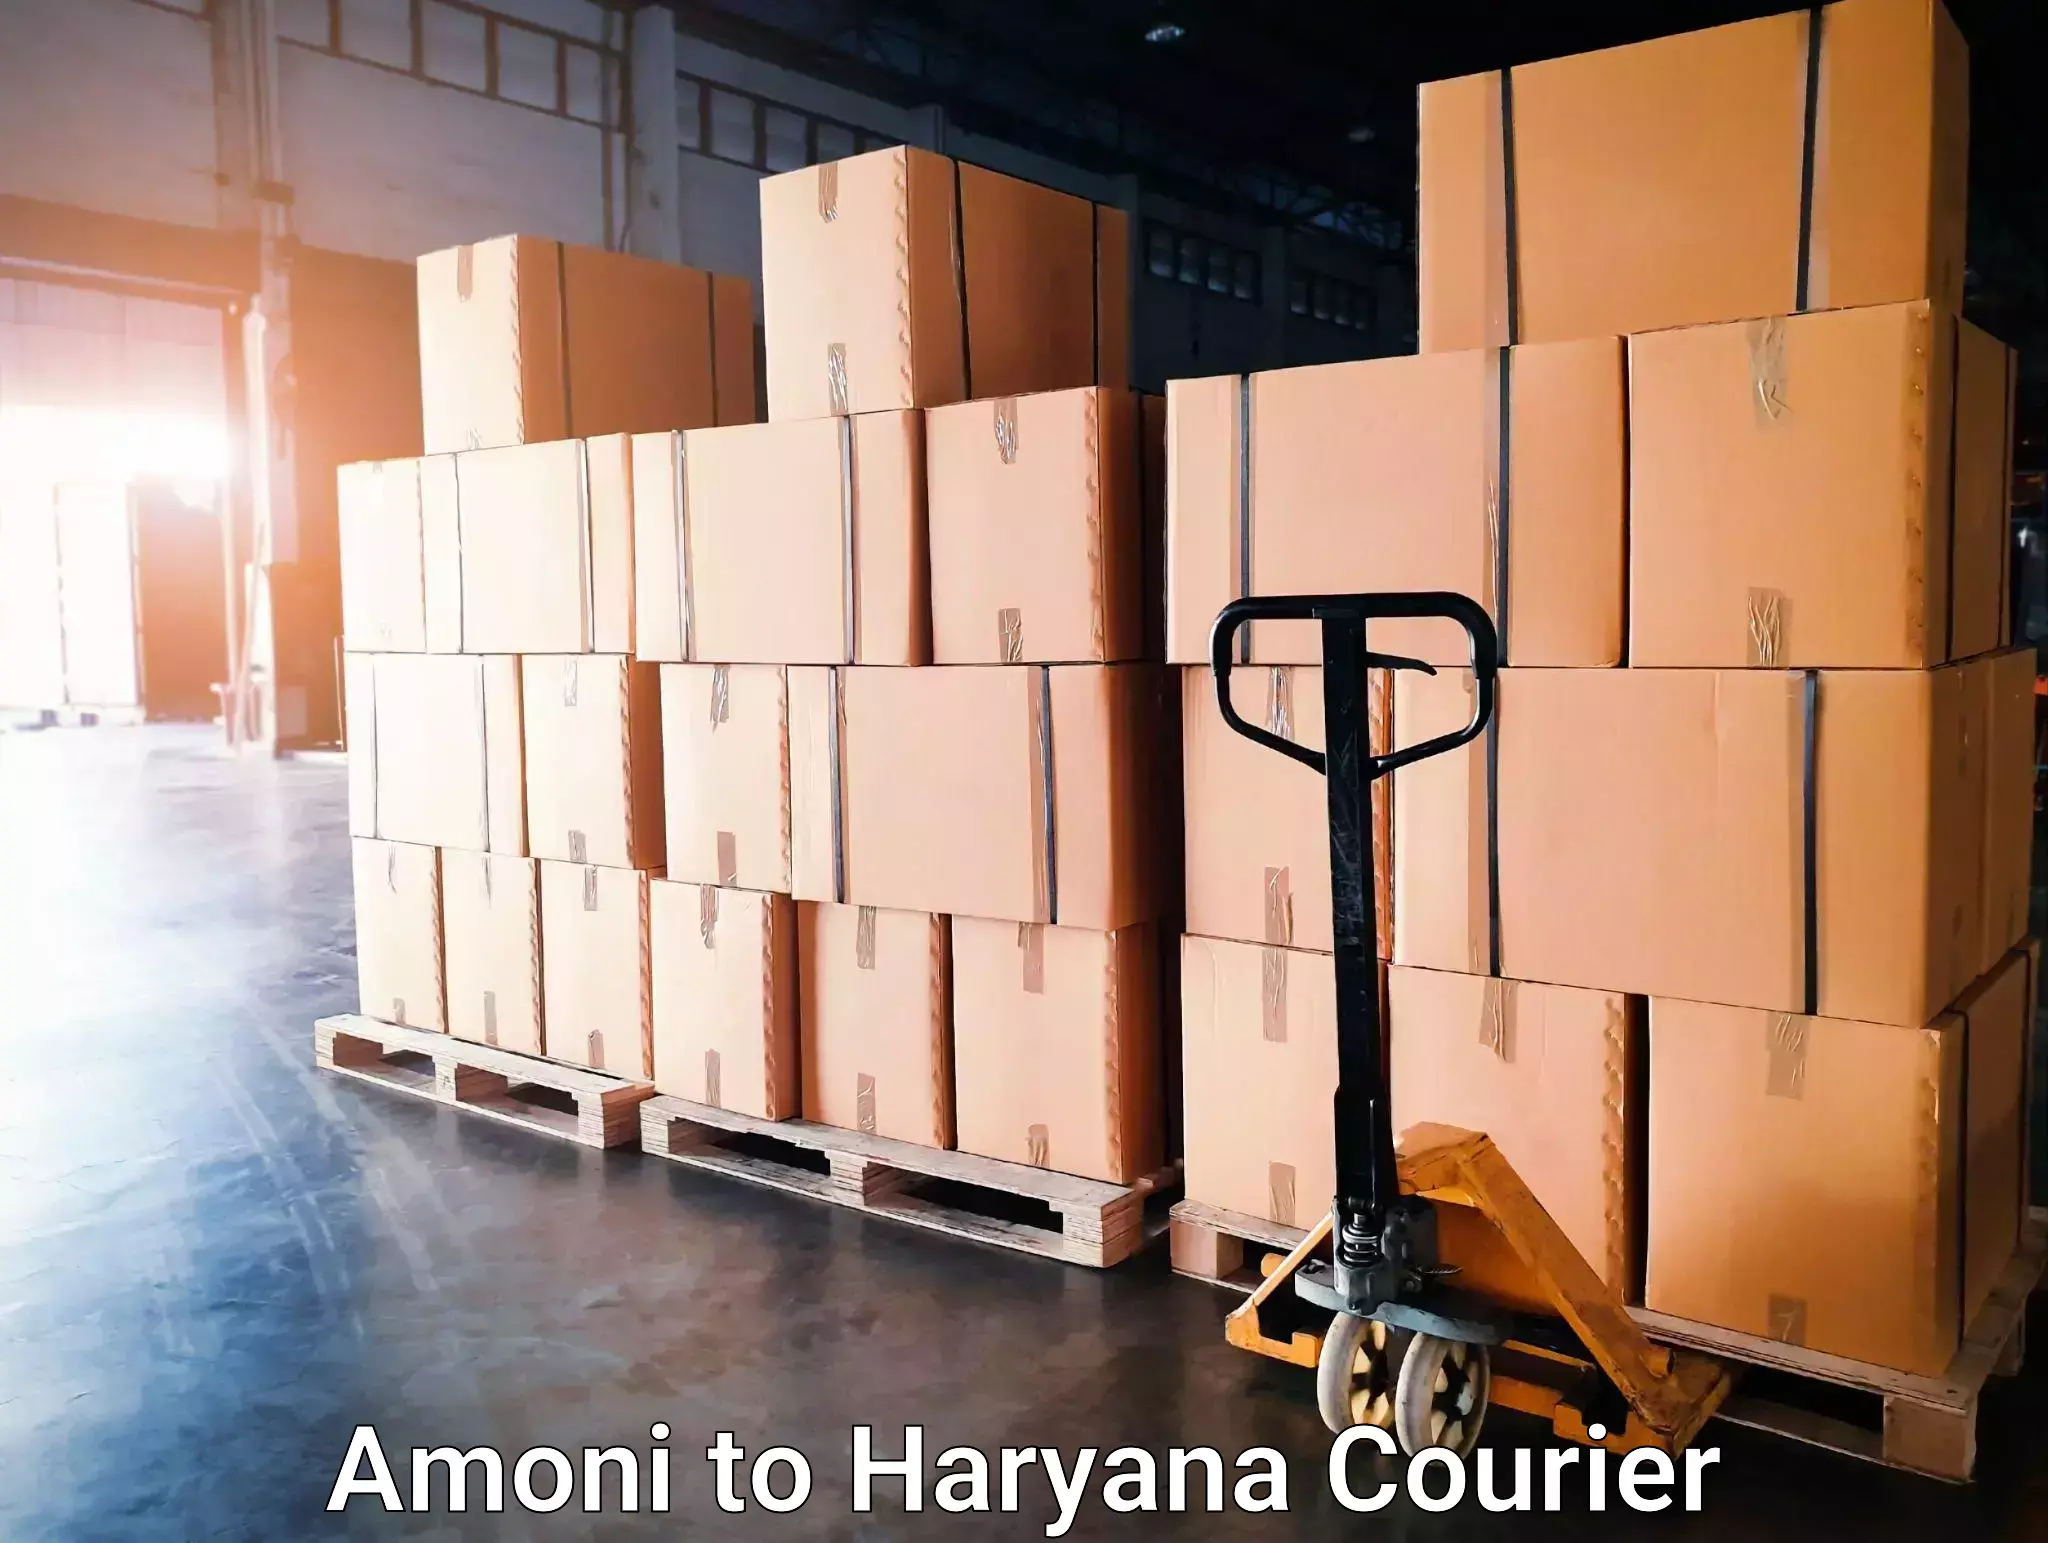 Nationwide delivery network Amoni to Haryana